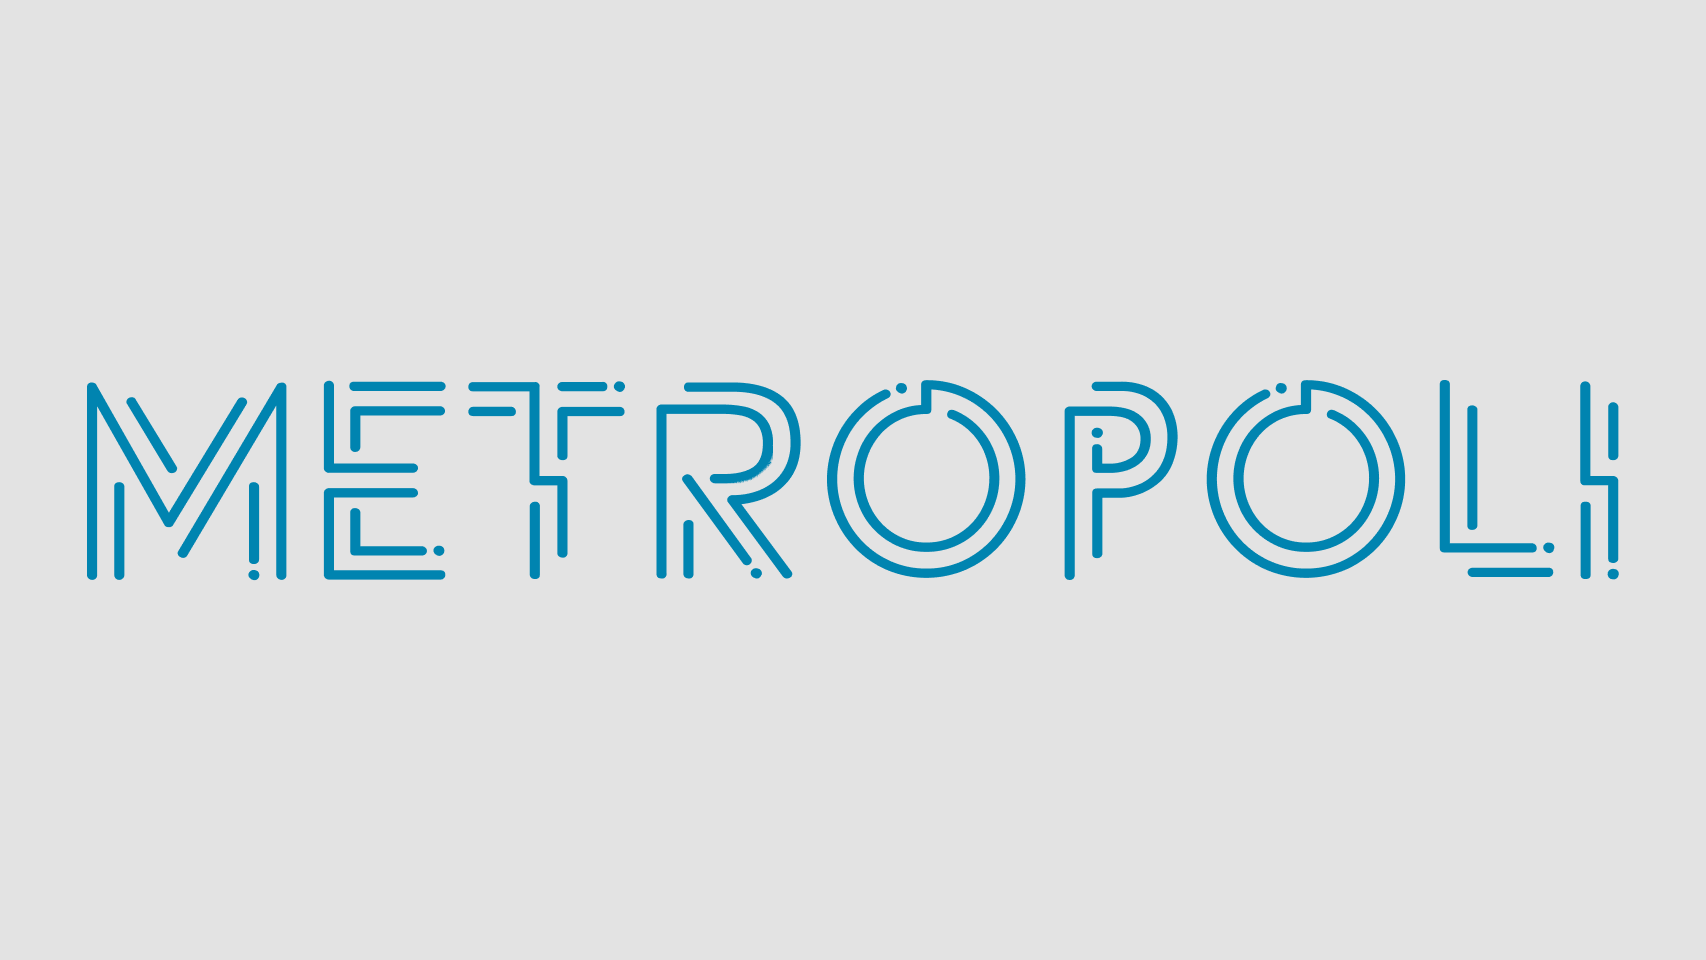 www.metropoliabierta.com